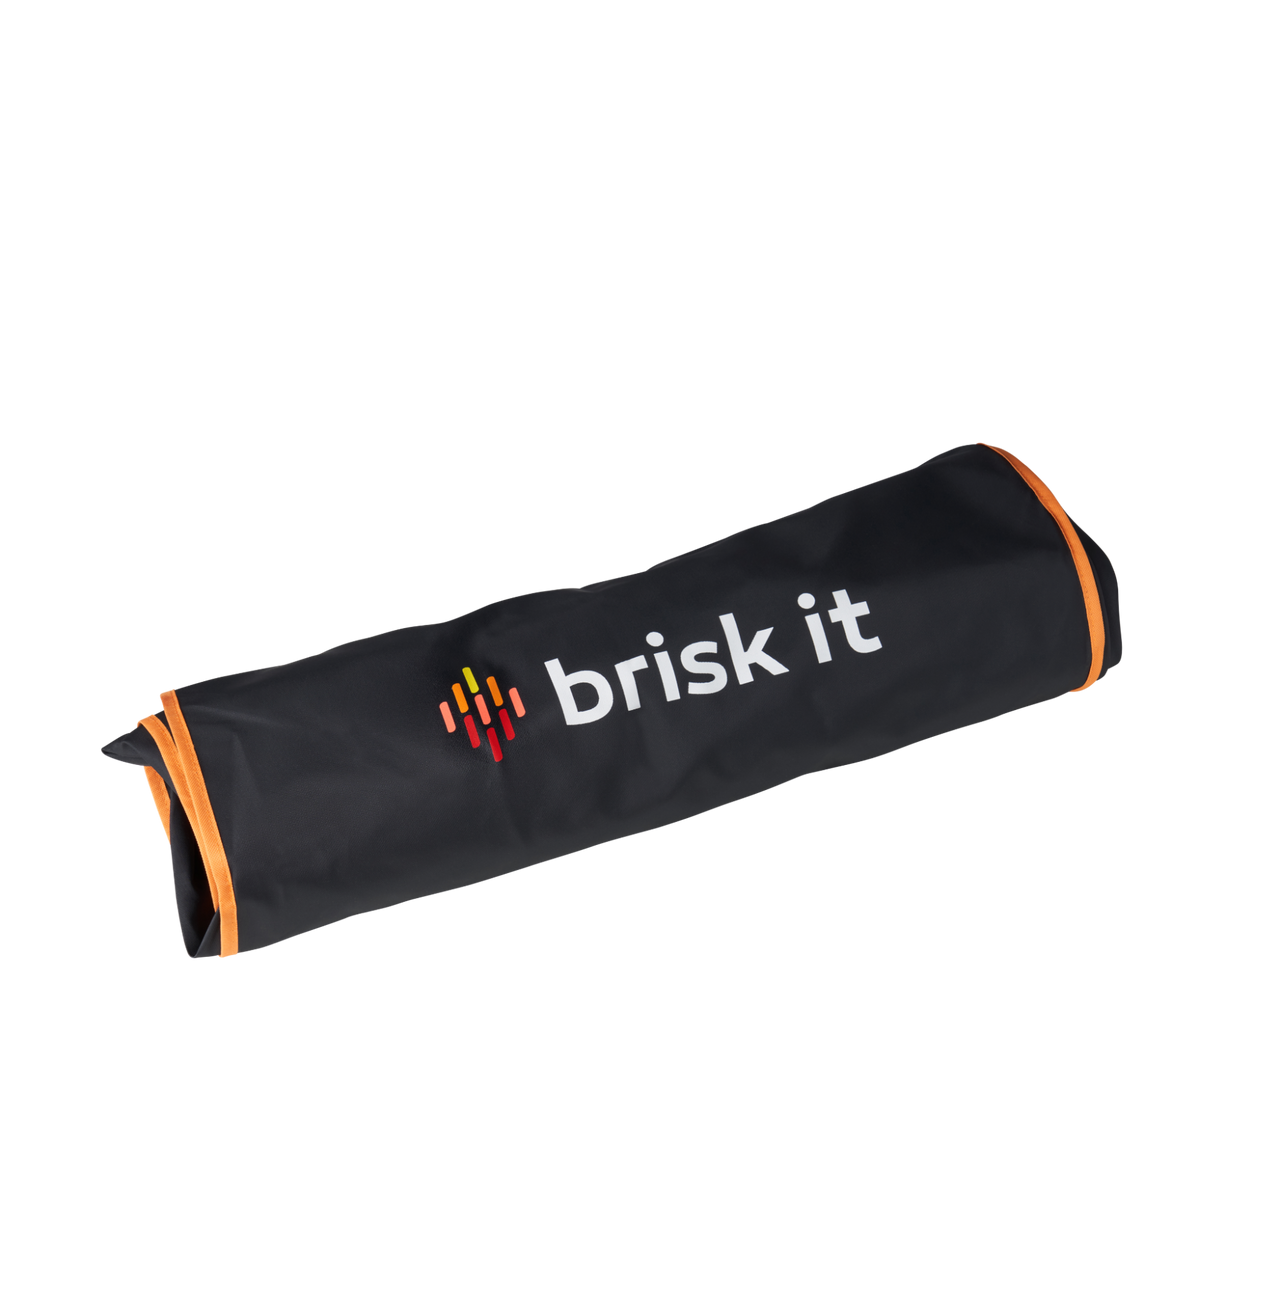 Brisk It Origin-580 Grill Cover